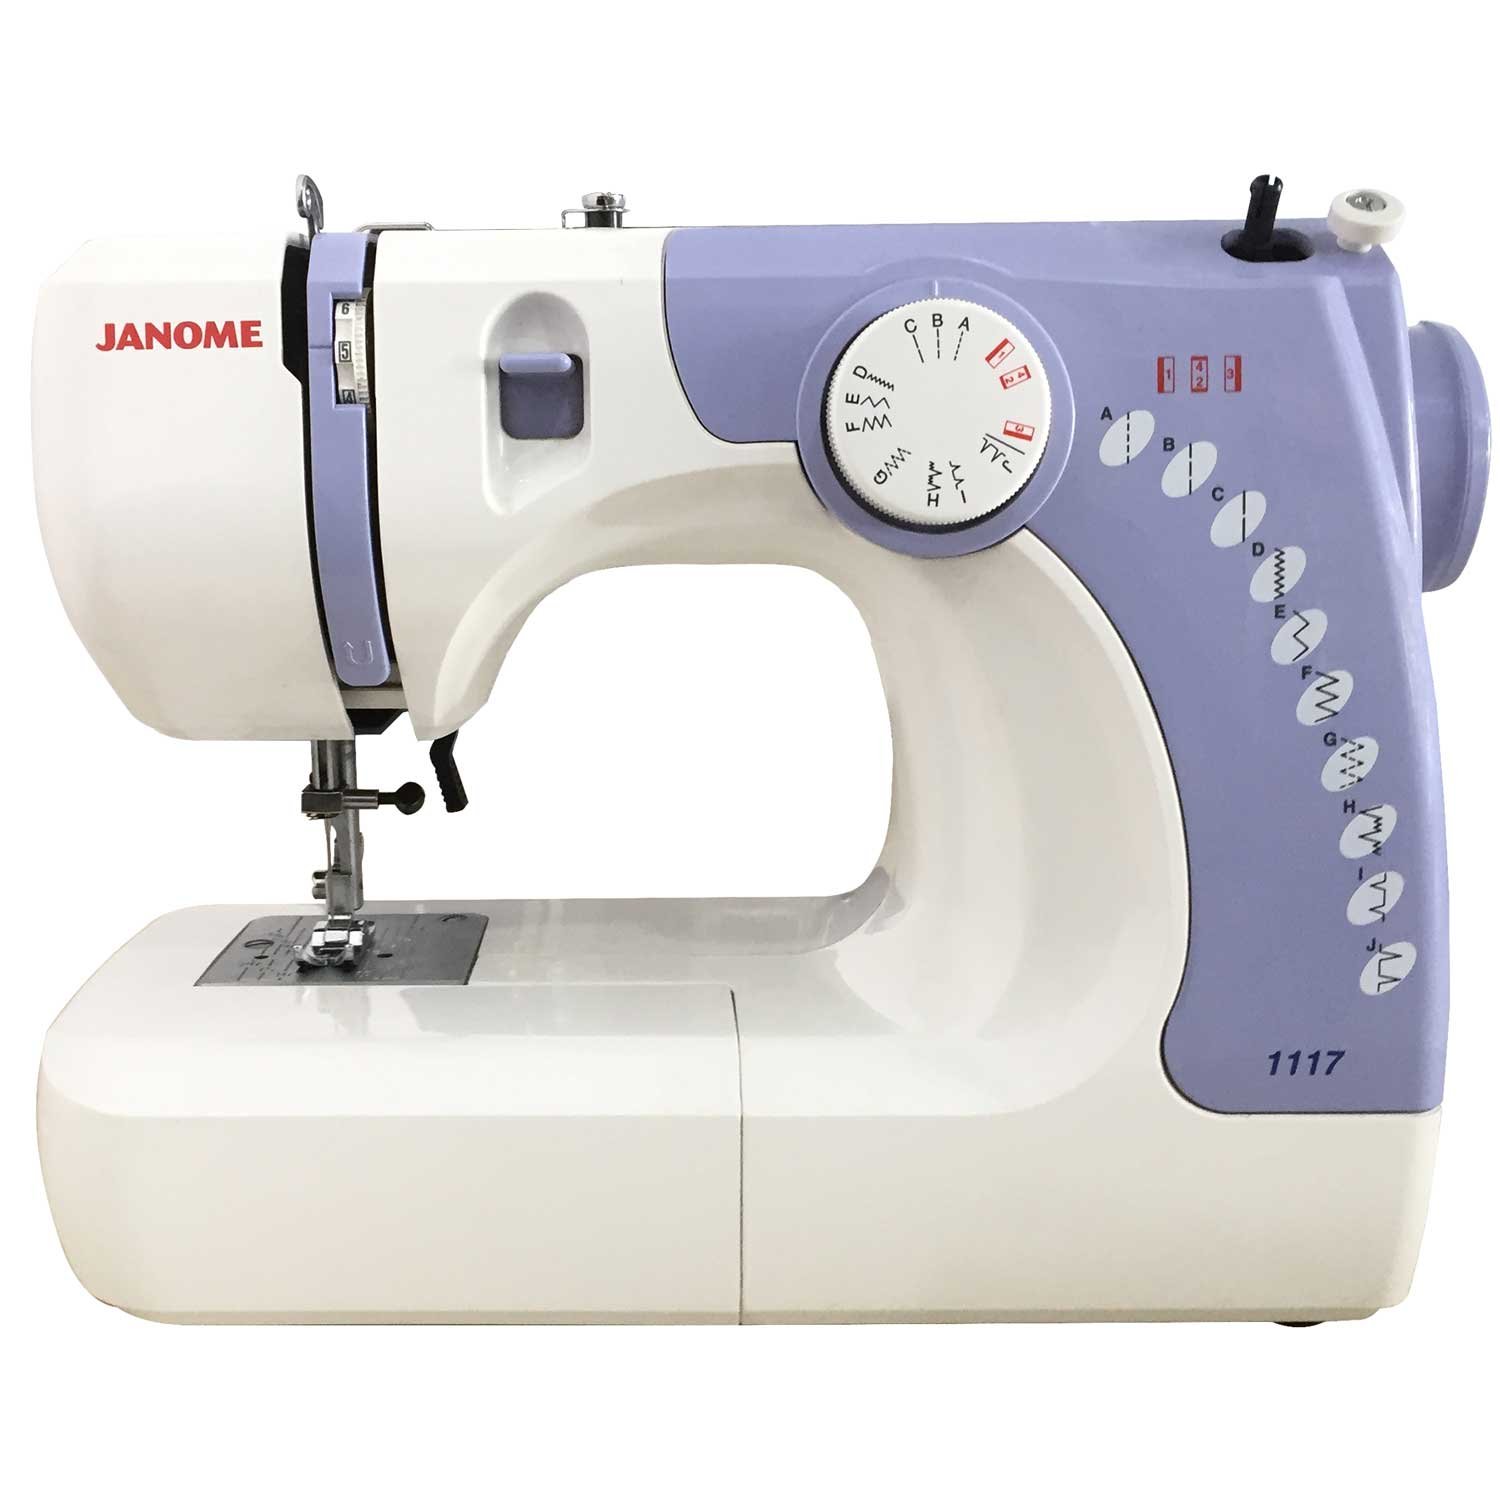 Usha Janome Automatic Stitch Magic 60-Watt Sewing Machine (White And Blue)  » SewingIndian